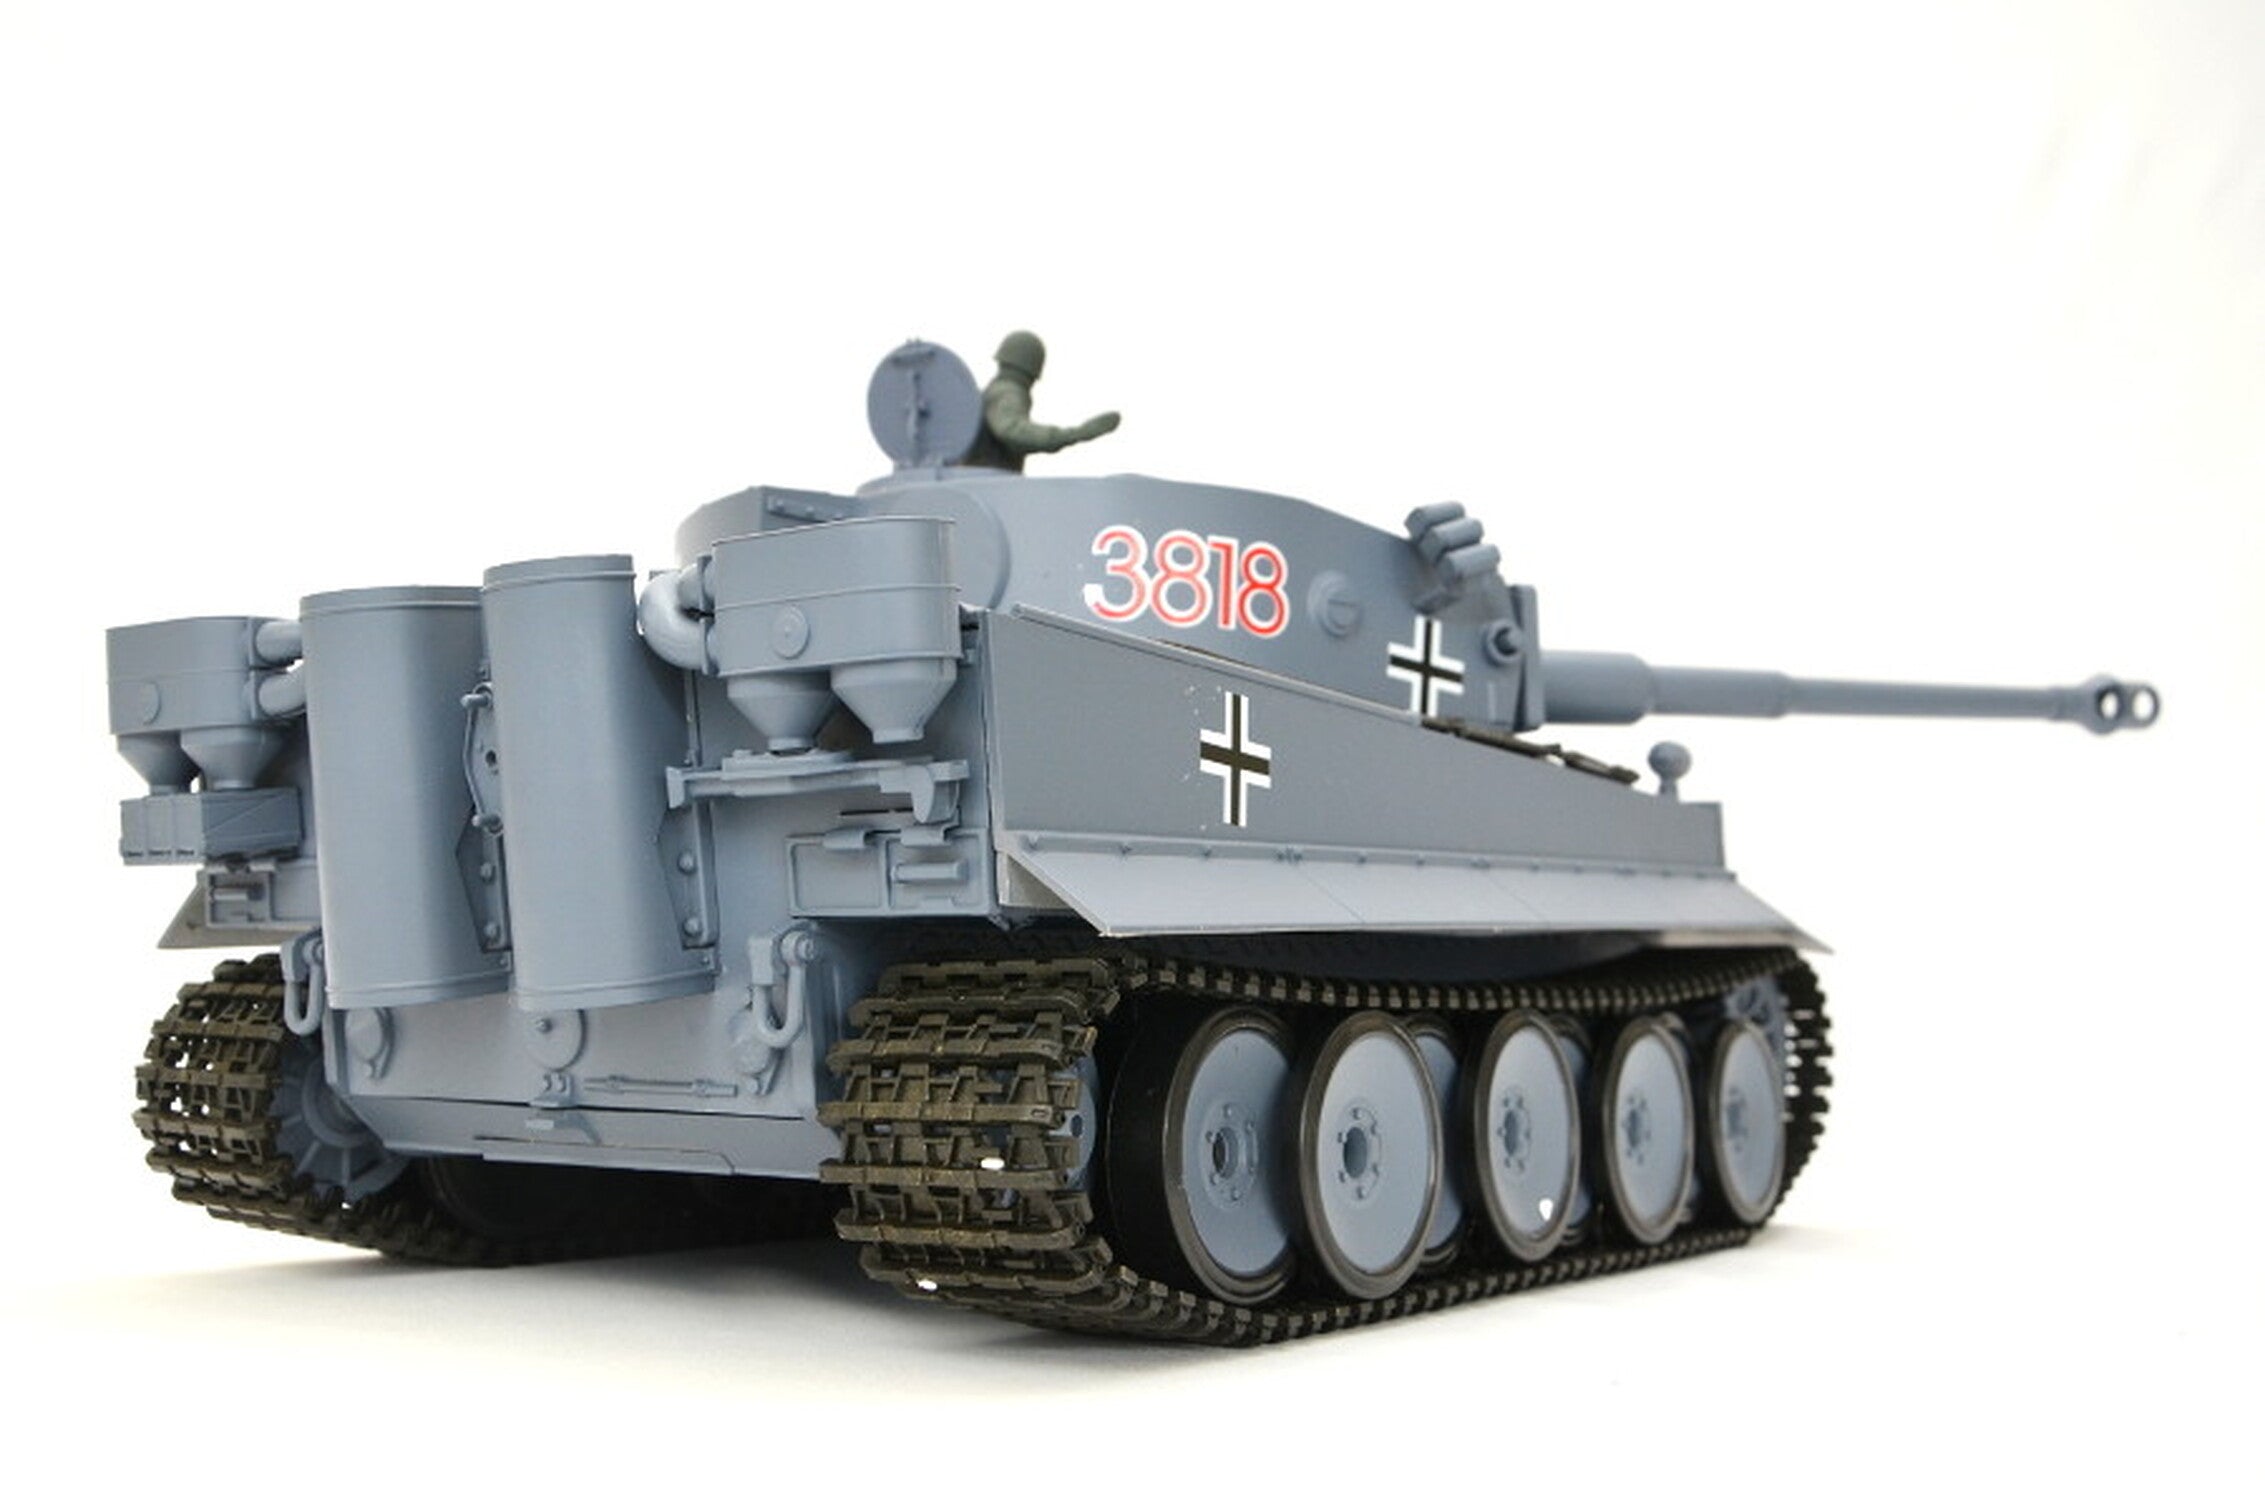 TPFLiving RC-Panzer German Tiger I 7-0 RC Panzer ferngesteuert - Panzer mit Schussfunktion, Stahlgetriebe und Kettenantrieb - Rauch und Sound - Maßstab 1:16